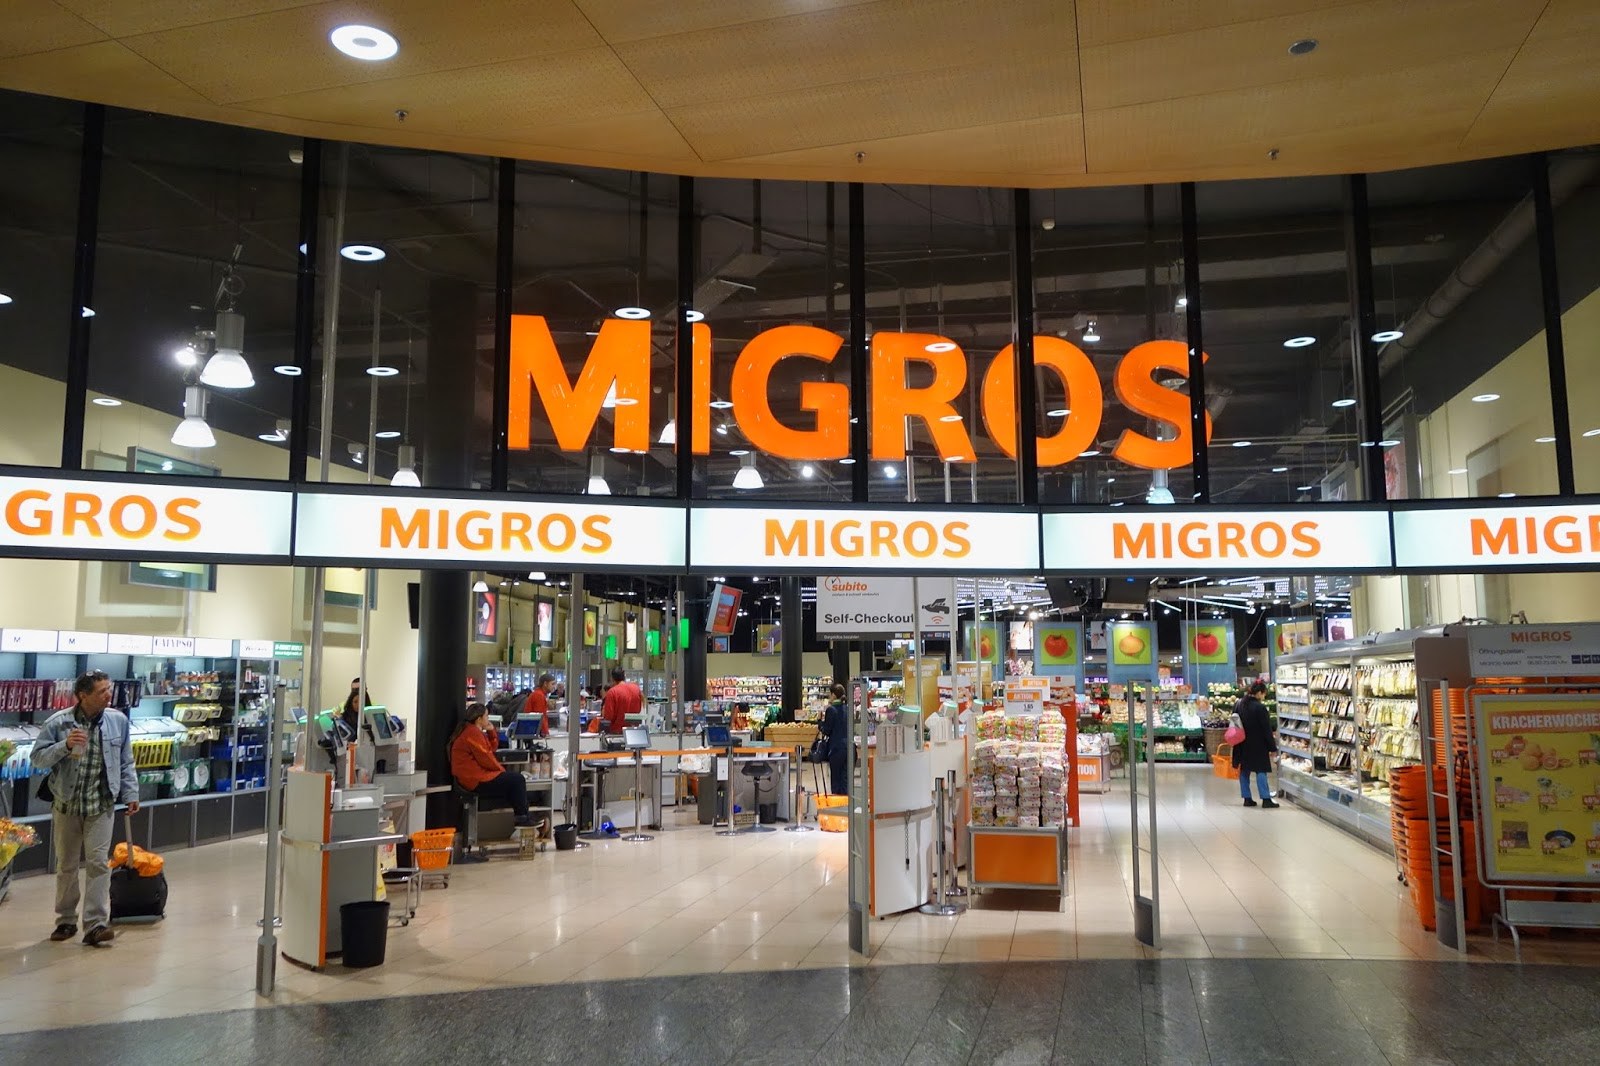 Migros yatırımcıdan habersiz Makro’yu alıyor